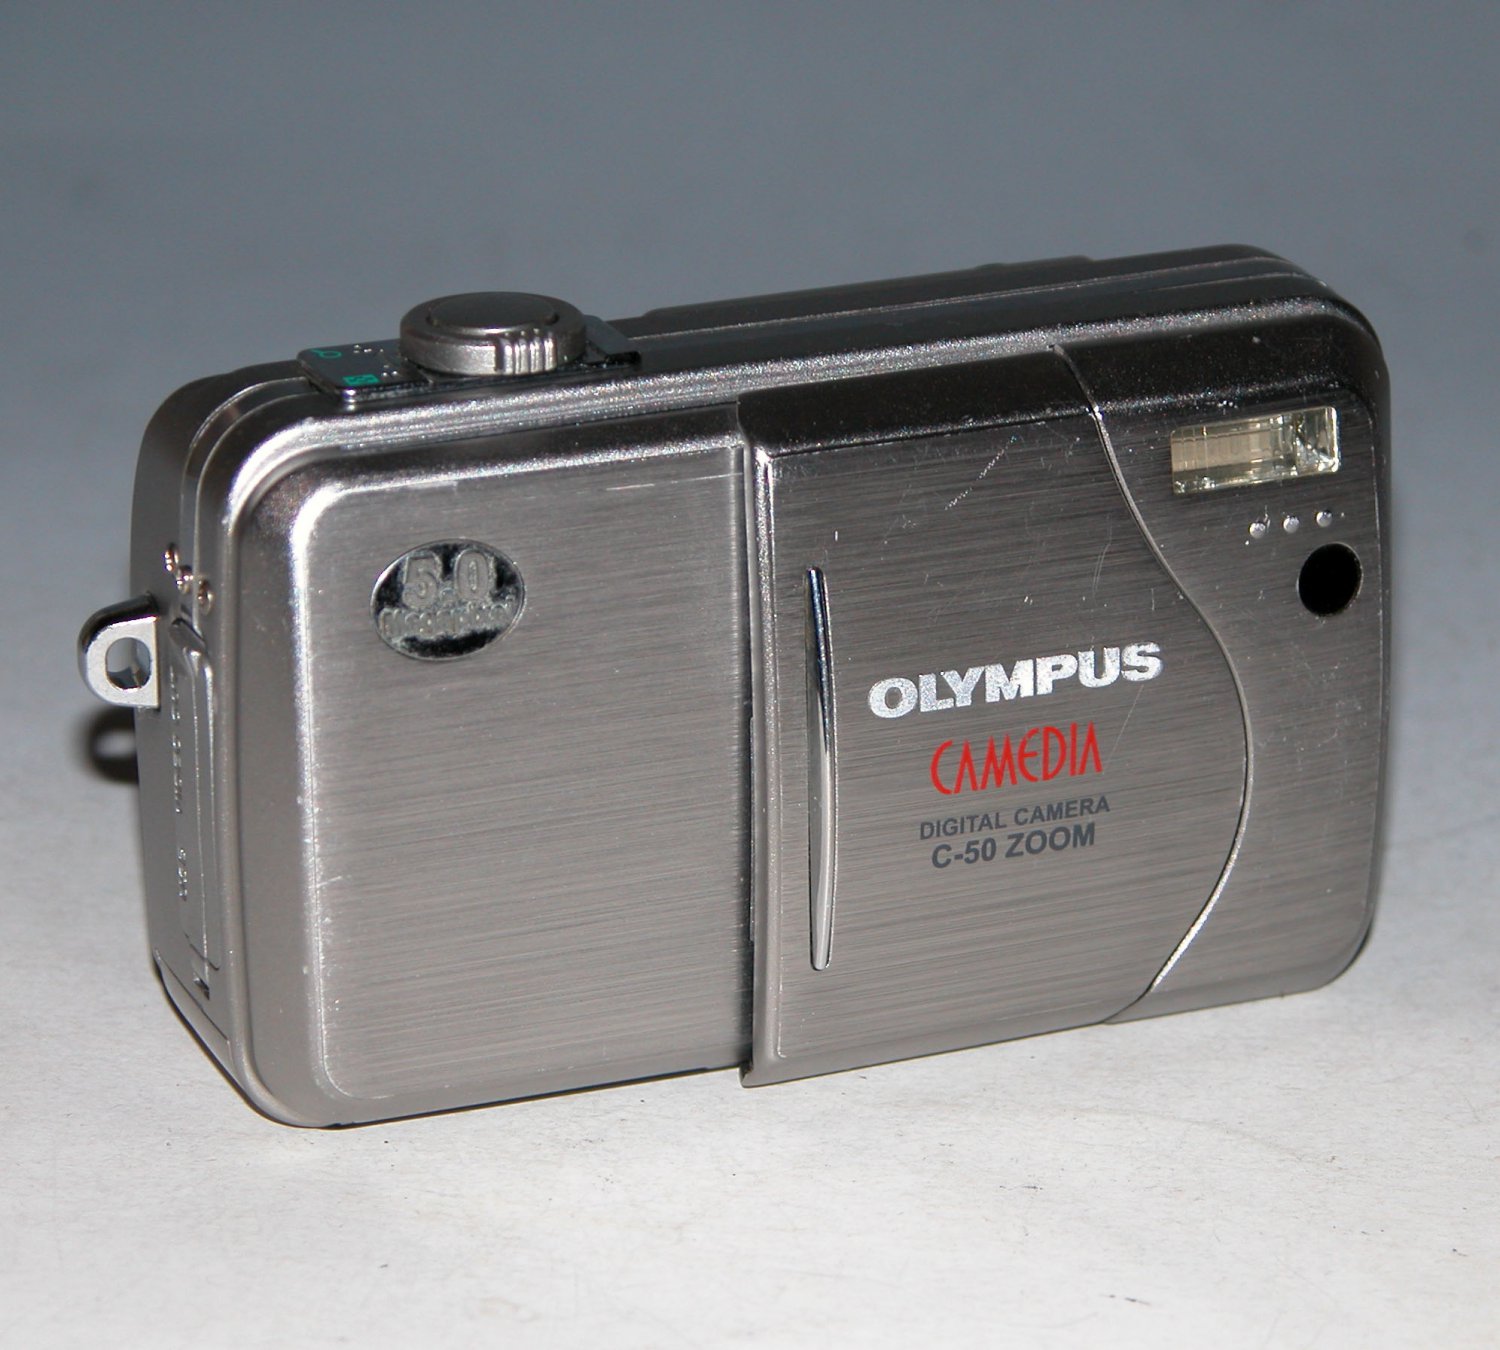 Olympus CAMEDIA C-50 Zoom 5.0MP Digital Camera - Silver #0413